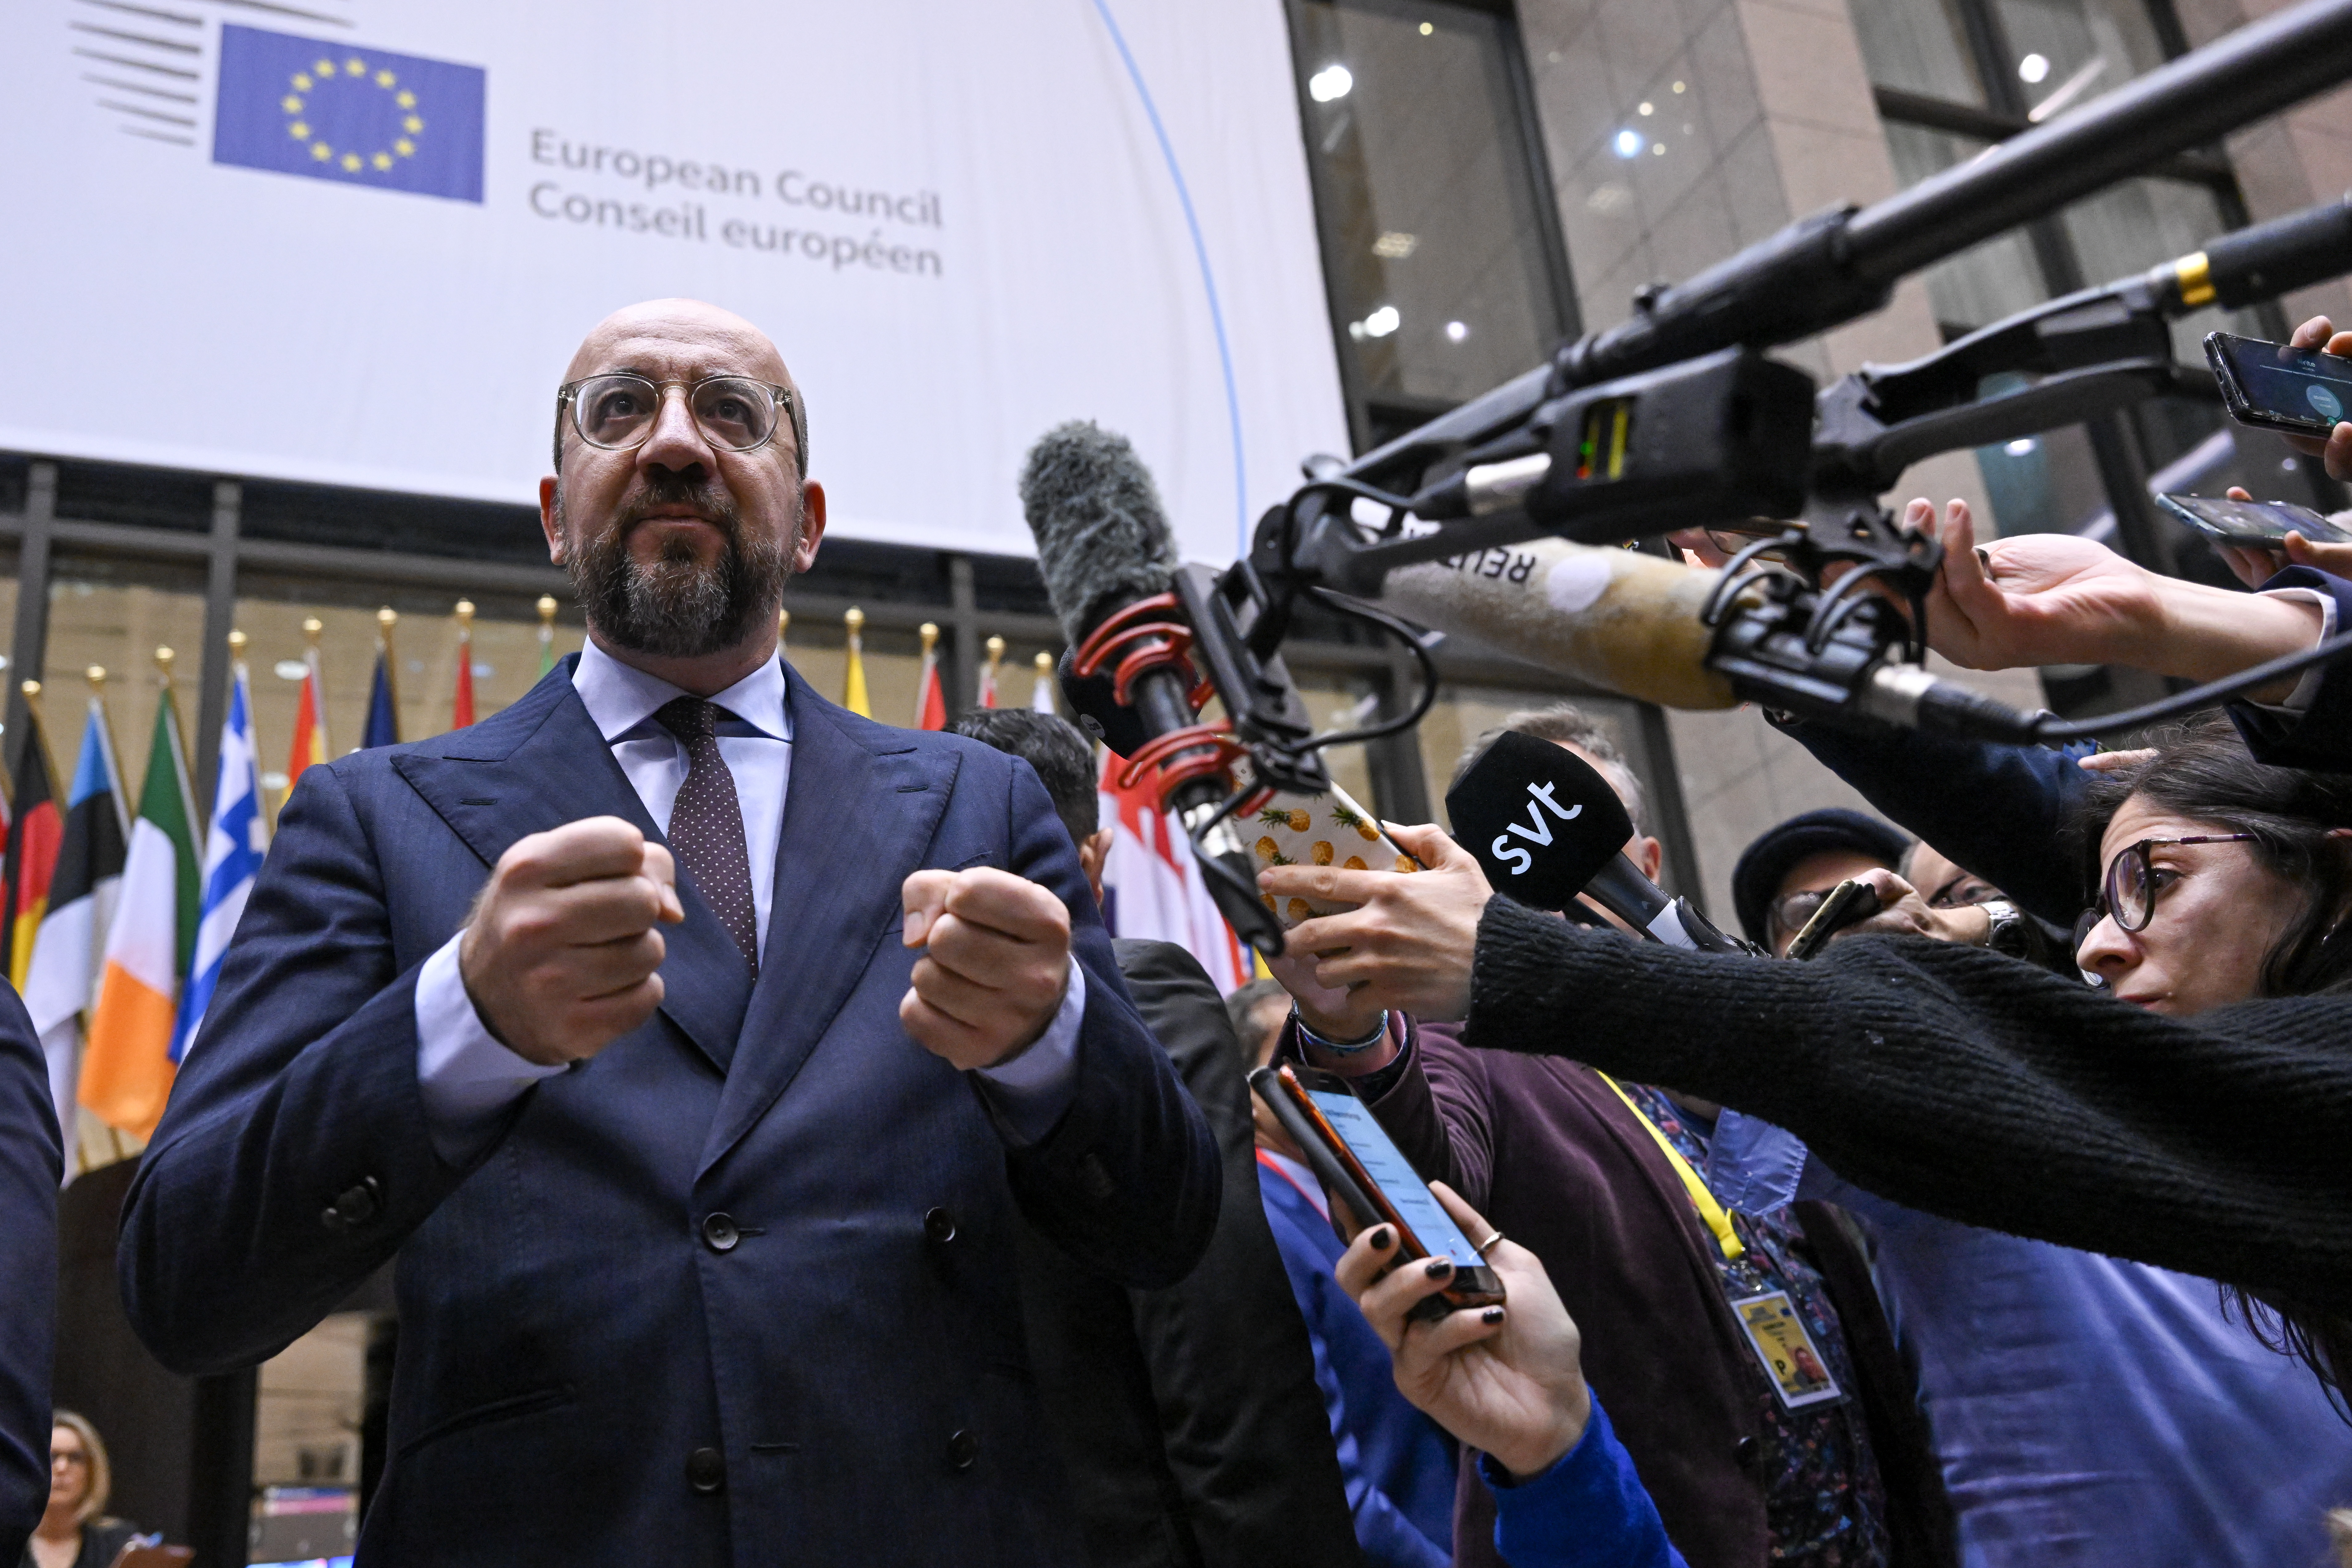 Президент Євроради Шарль Мішель наголосив, що ЄС на боці народу України, і рішення, яке ухвалили держави-члени, надзвичайно важливе для авторитету Європейського Союзу. Фото з сайту consilium.europa.eu